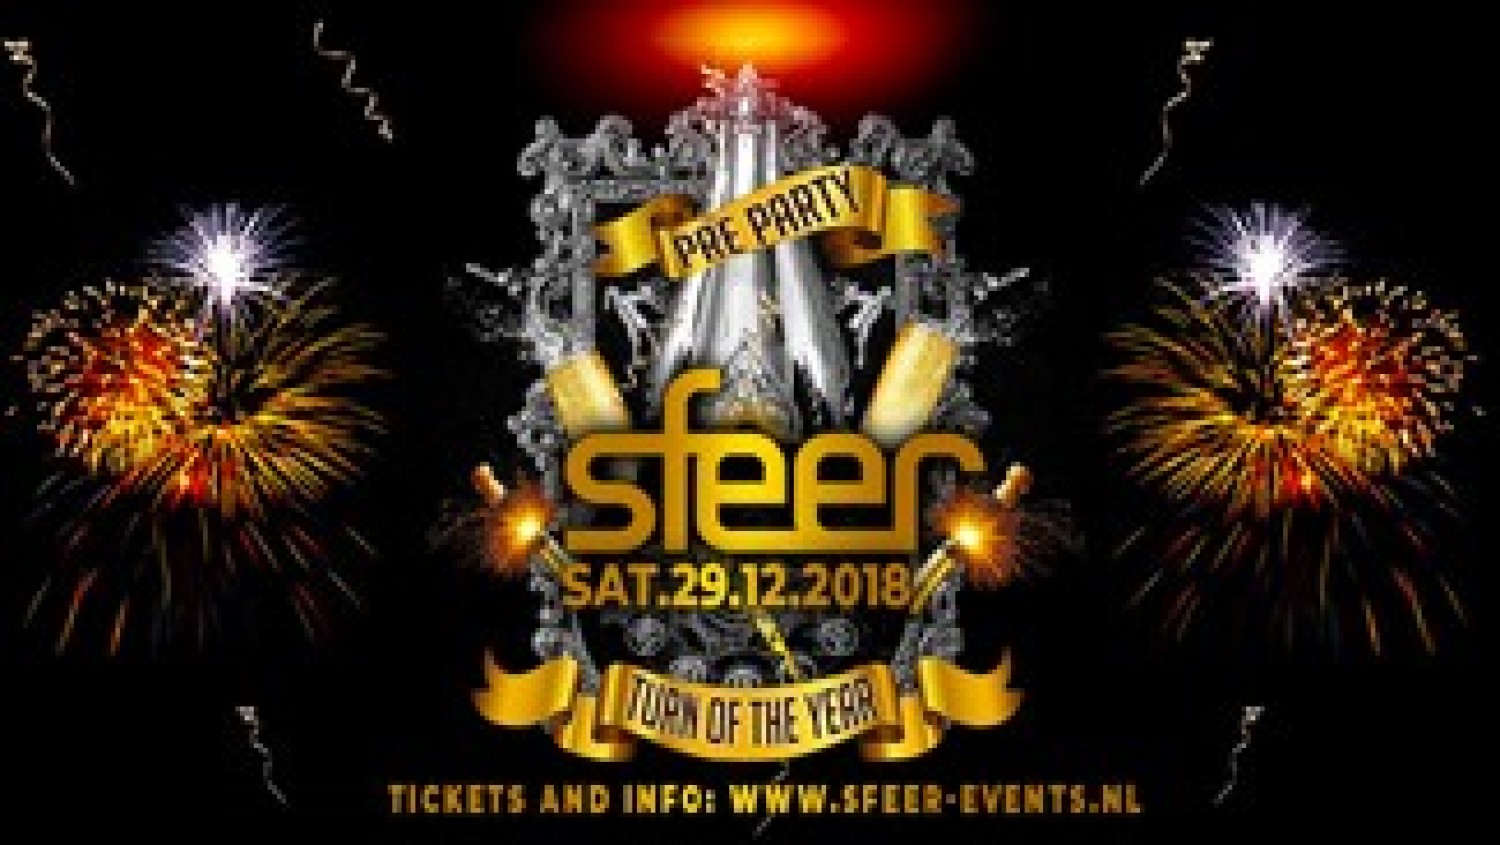 Party nieuws: SFEER maakt line-up bekend voor Turn of the Year